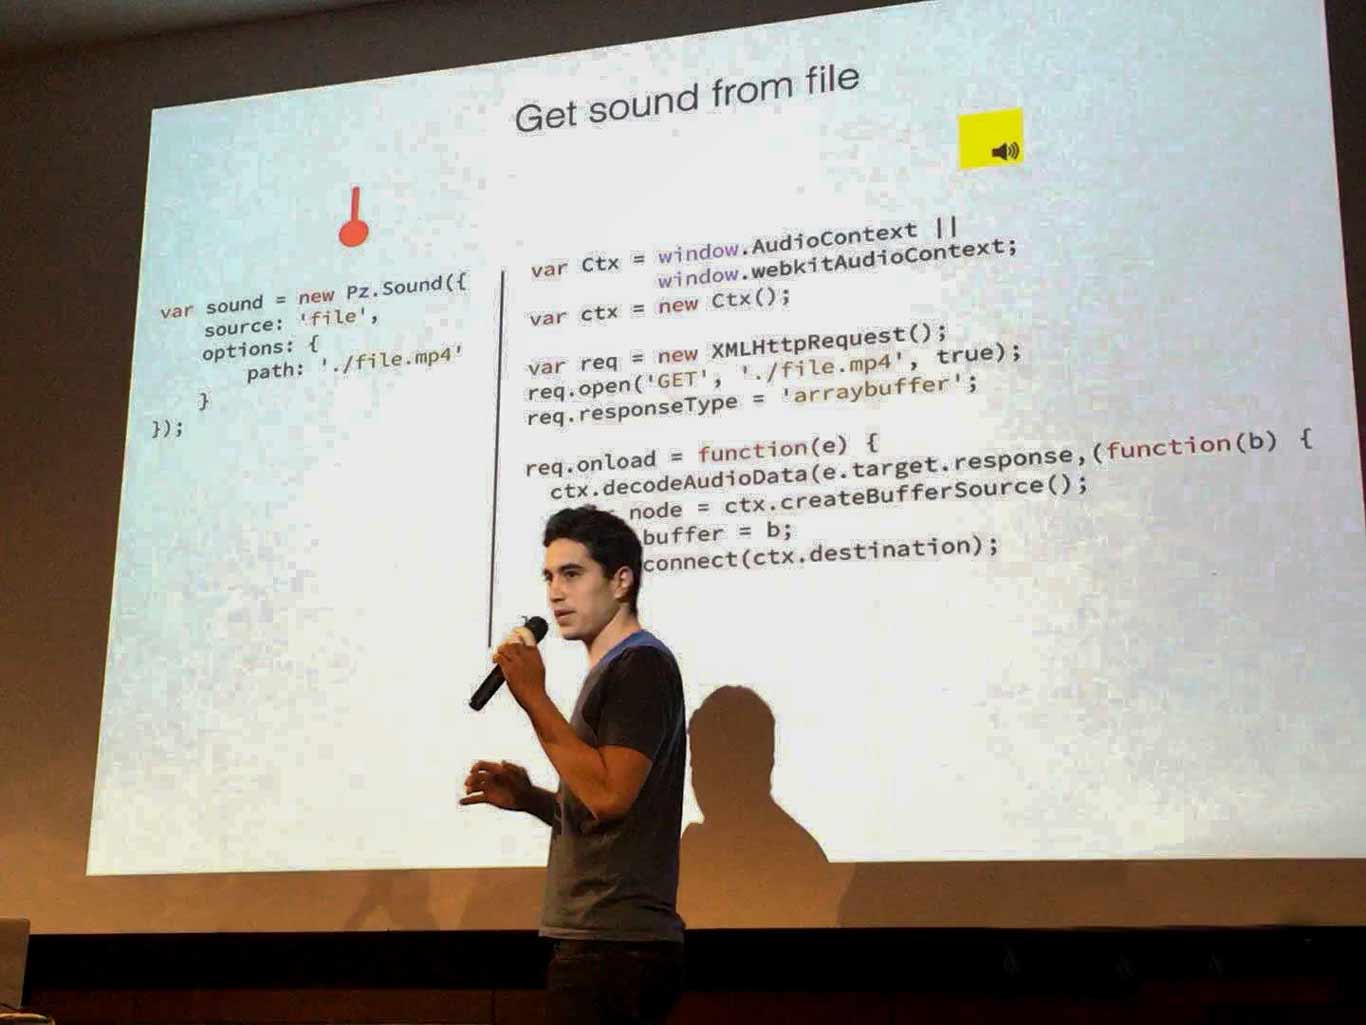 Alejandro dando una conferencia sobre su aplicación Pizzicato.js